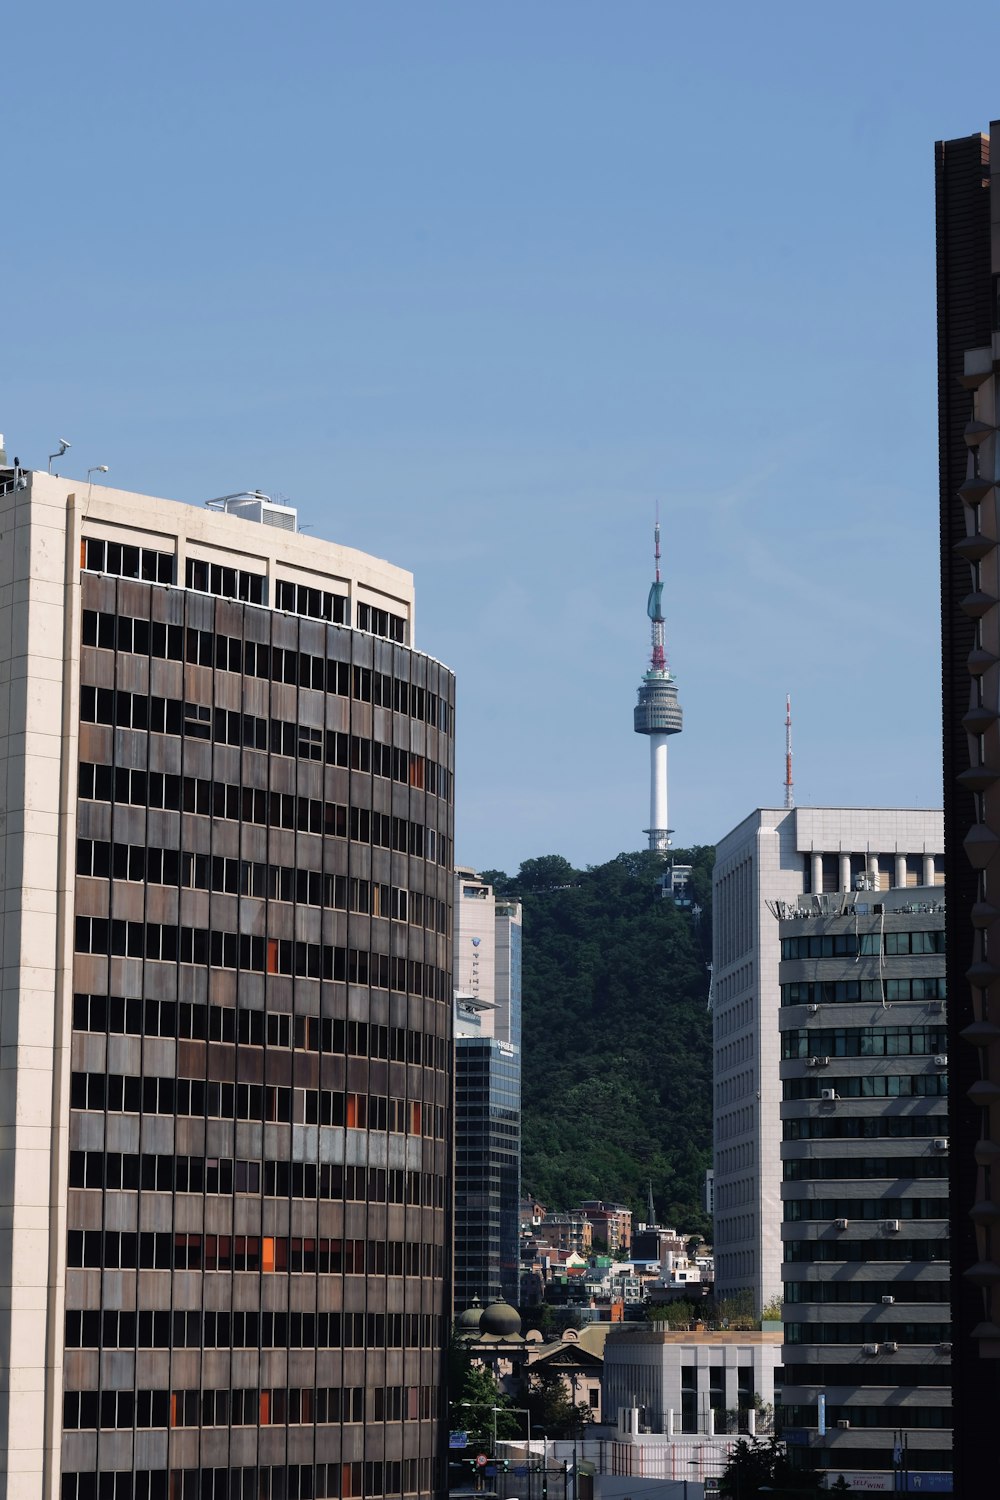 Blick auf eine Stadt mit hohen Gebäuden und einem Fernsehturm im Hintergrund